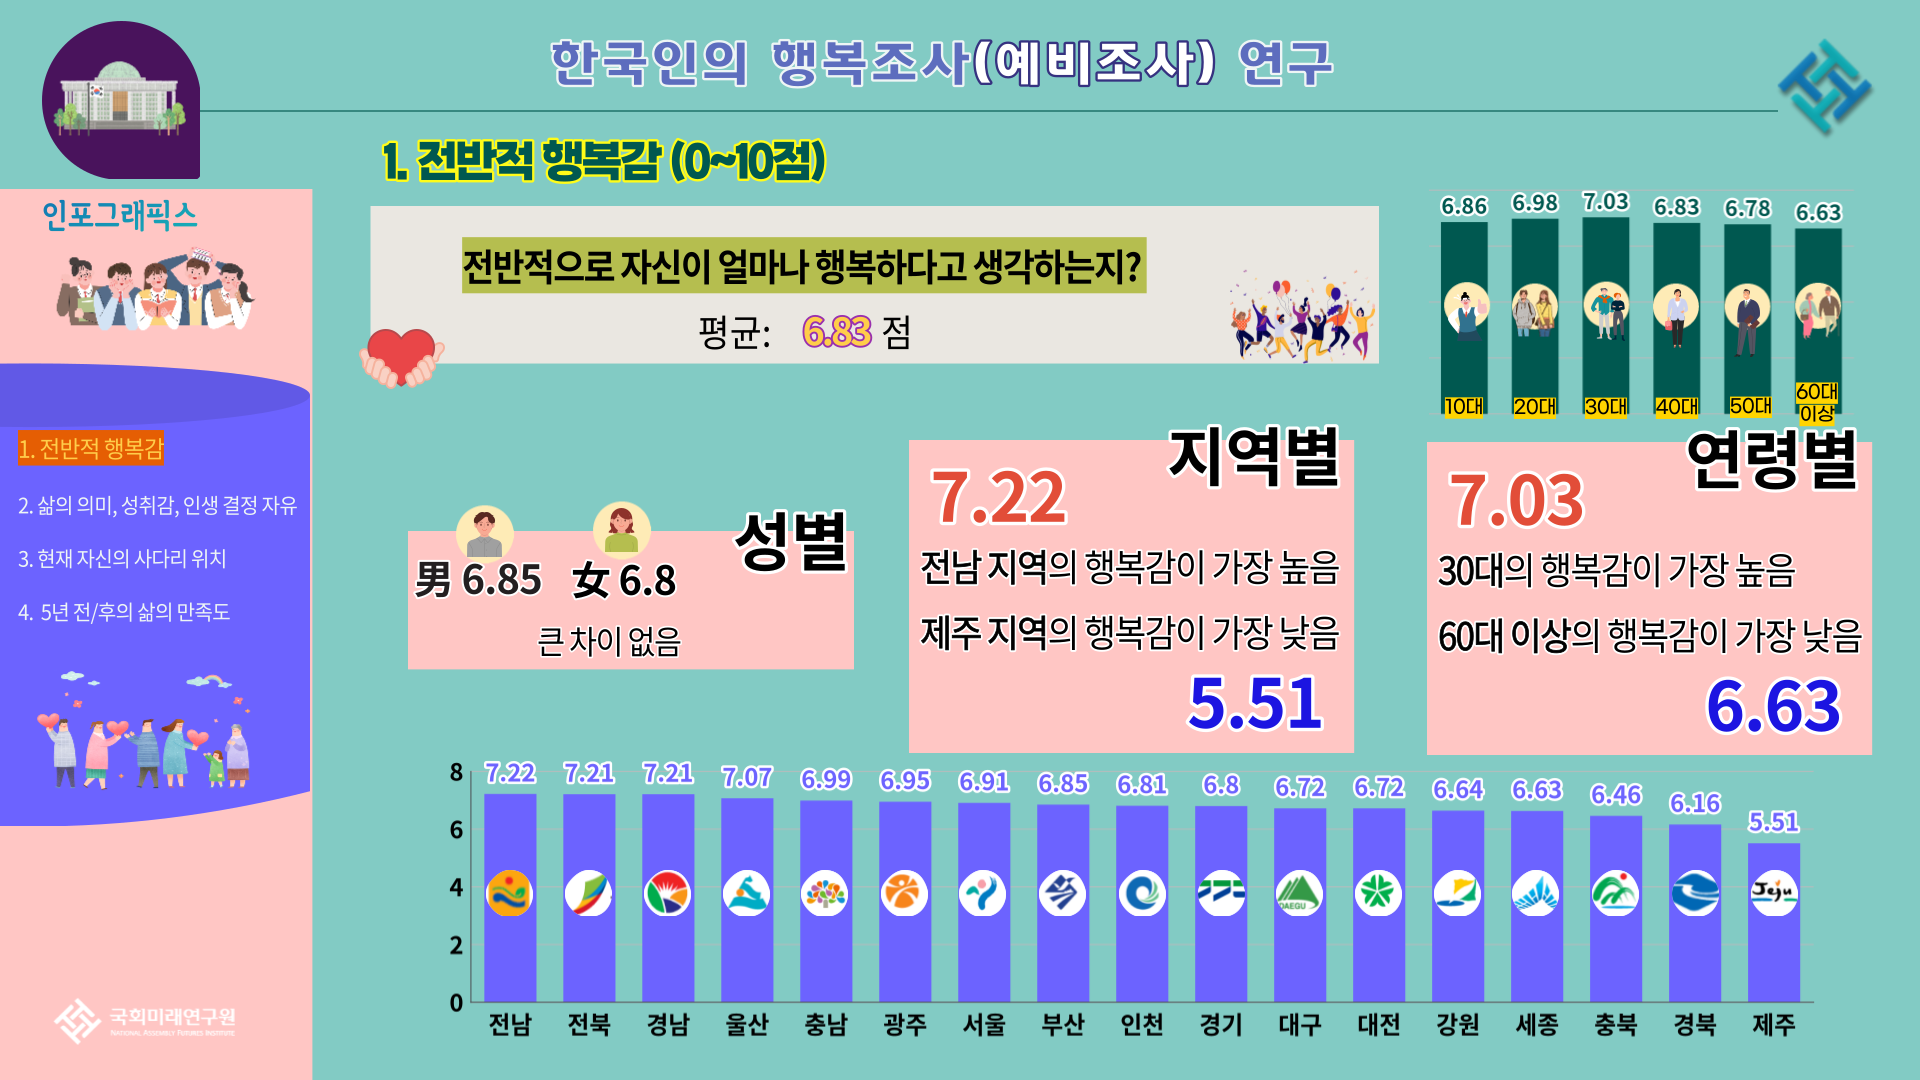 2020년 한국인의 행복조사 결과